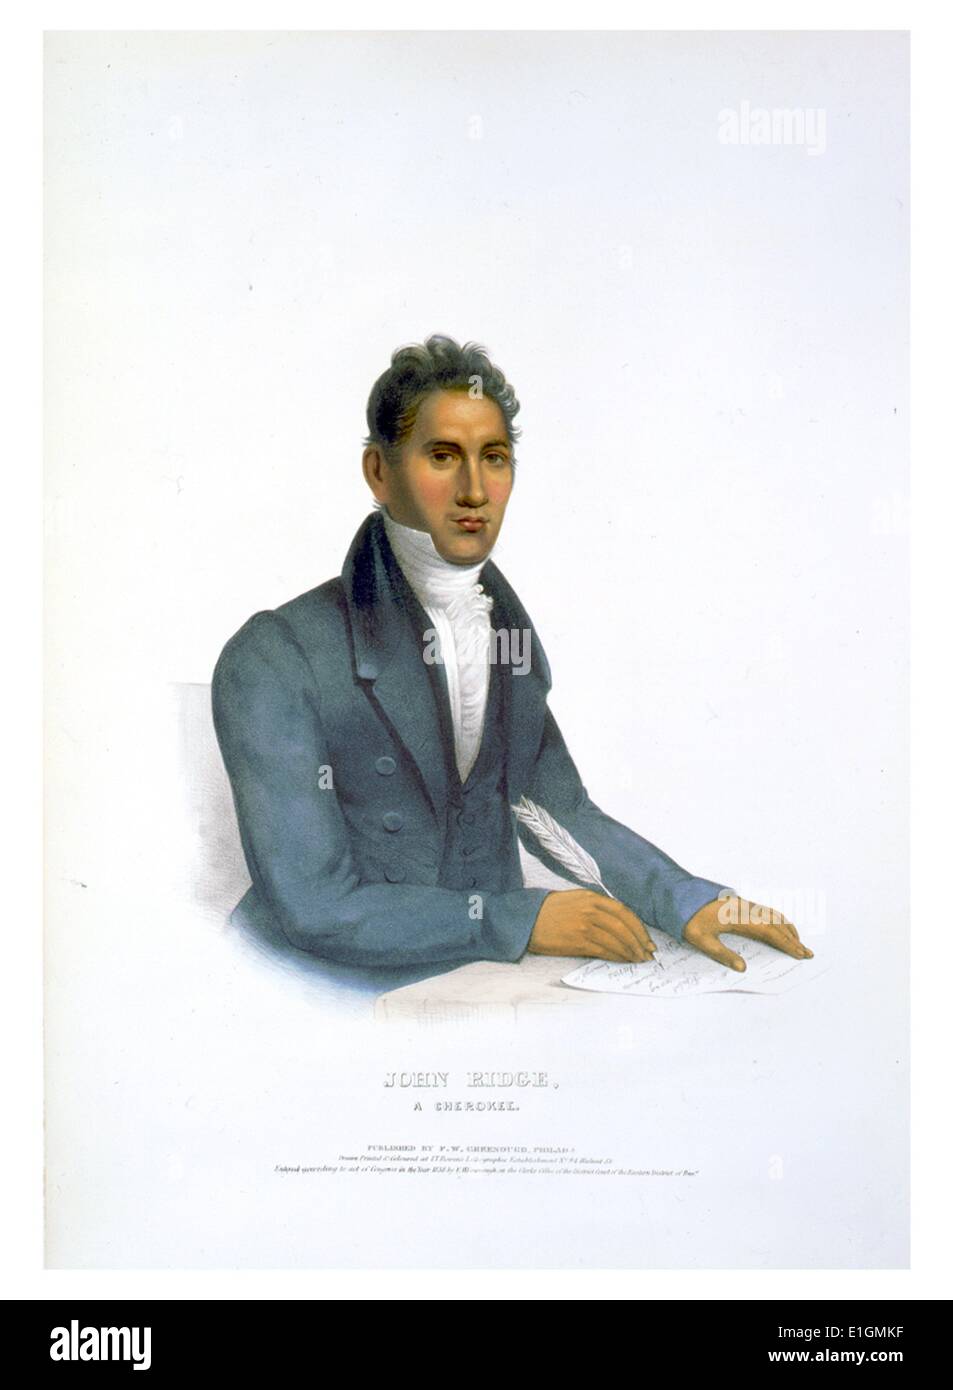 Stampa mostra Giovanni Ridge, mezza lunghezza ritratto, seduto, rivolto verso destra, scrivere con la penna del cappello. Foto Stock